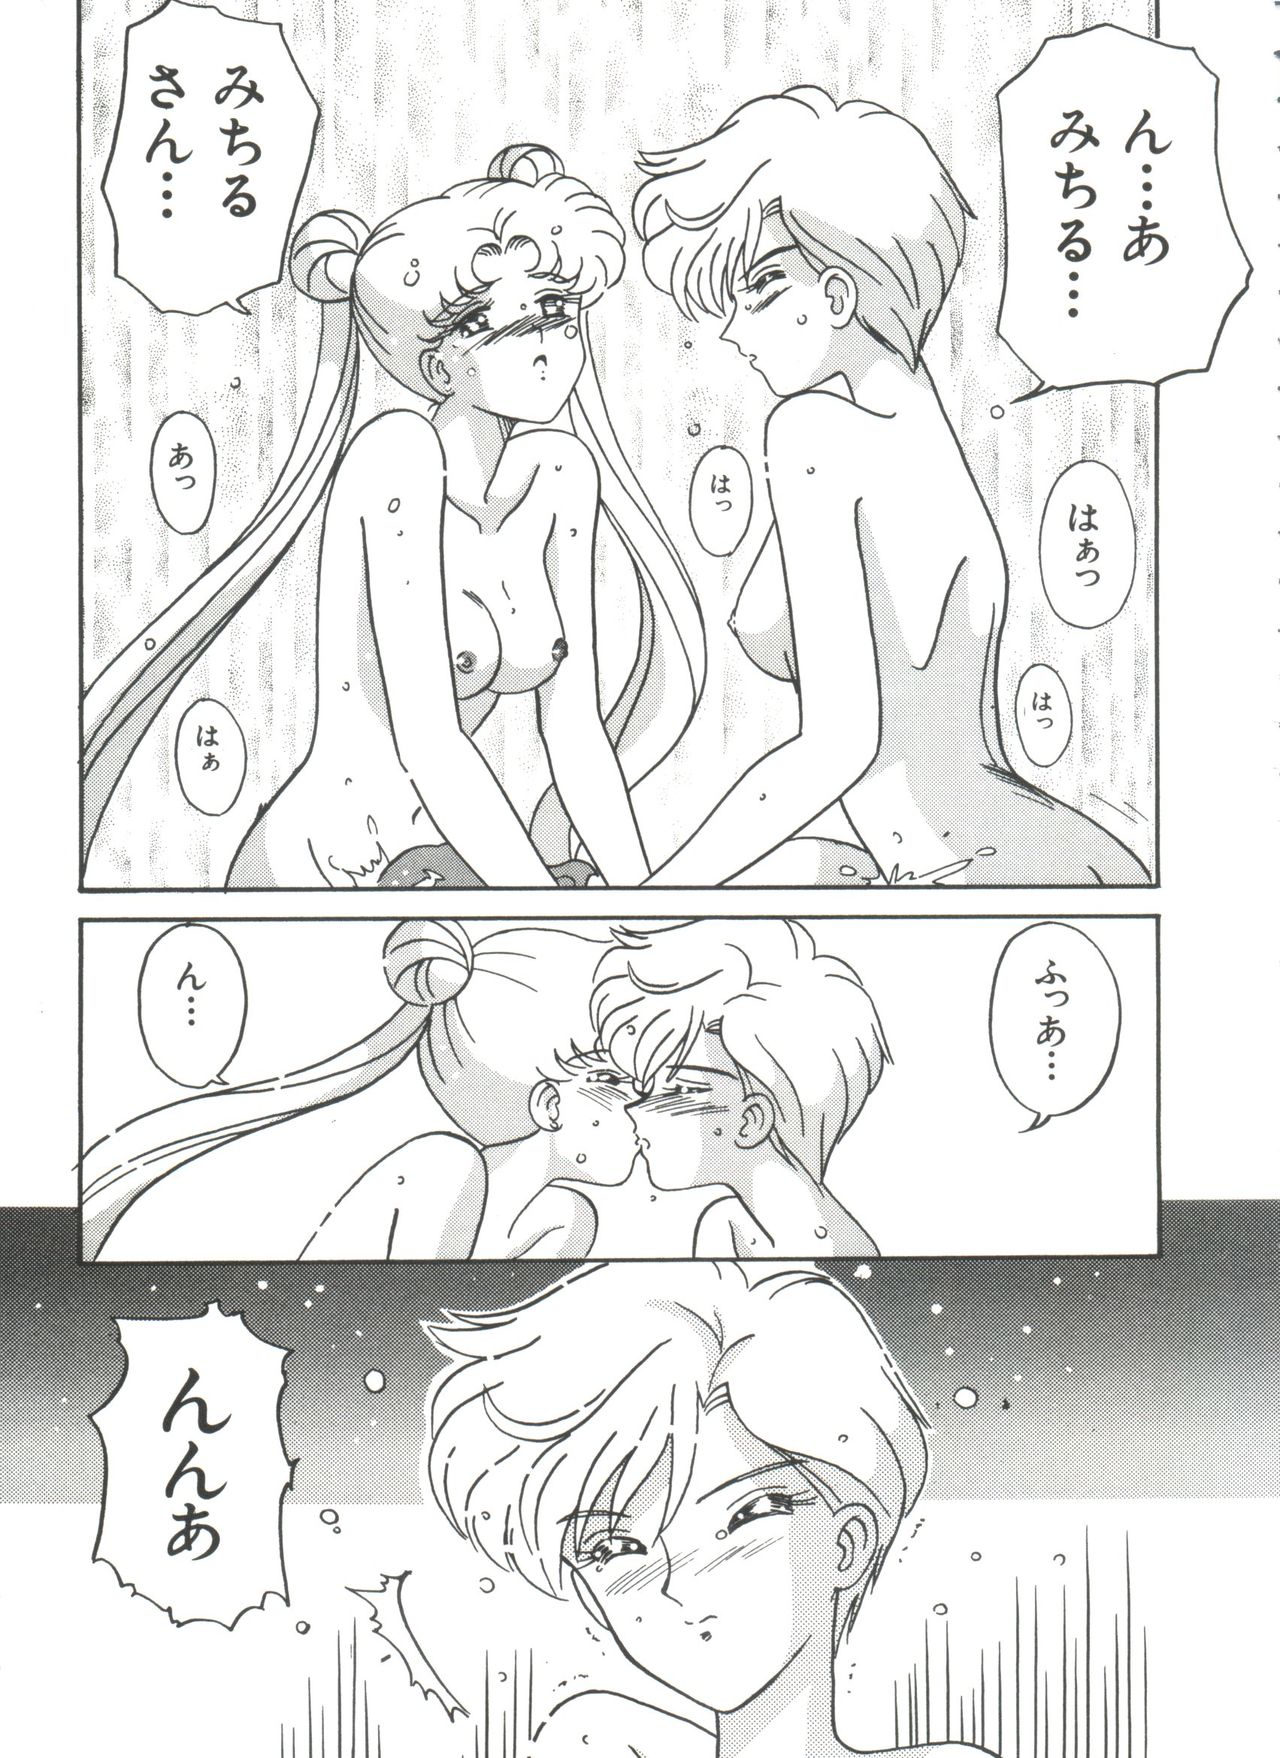 [Anthology] Shaking World (Sailor Moon) シェイキングワールド(セーラームーン)